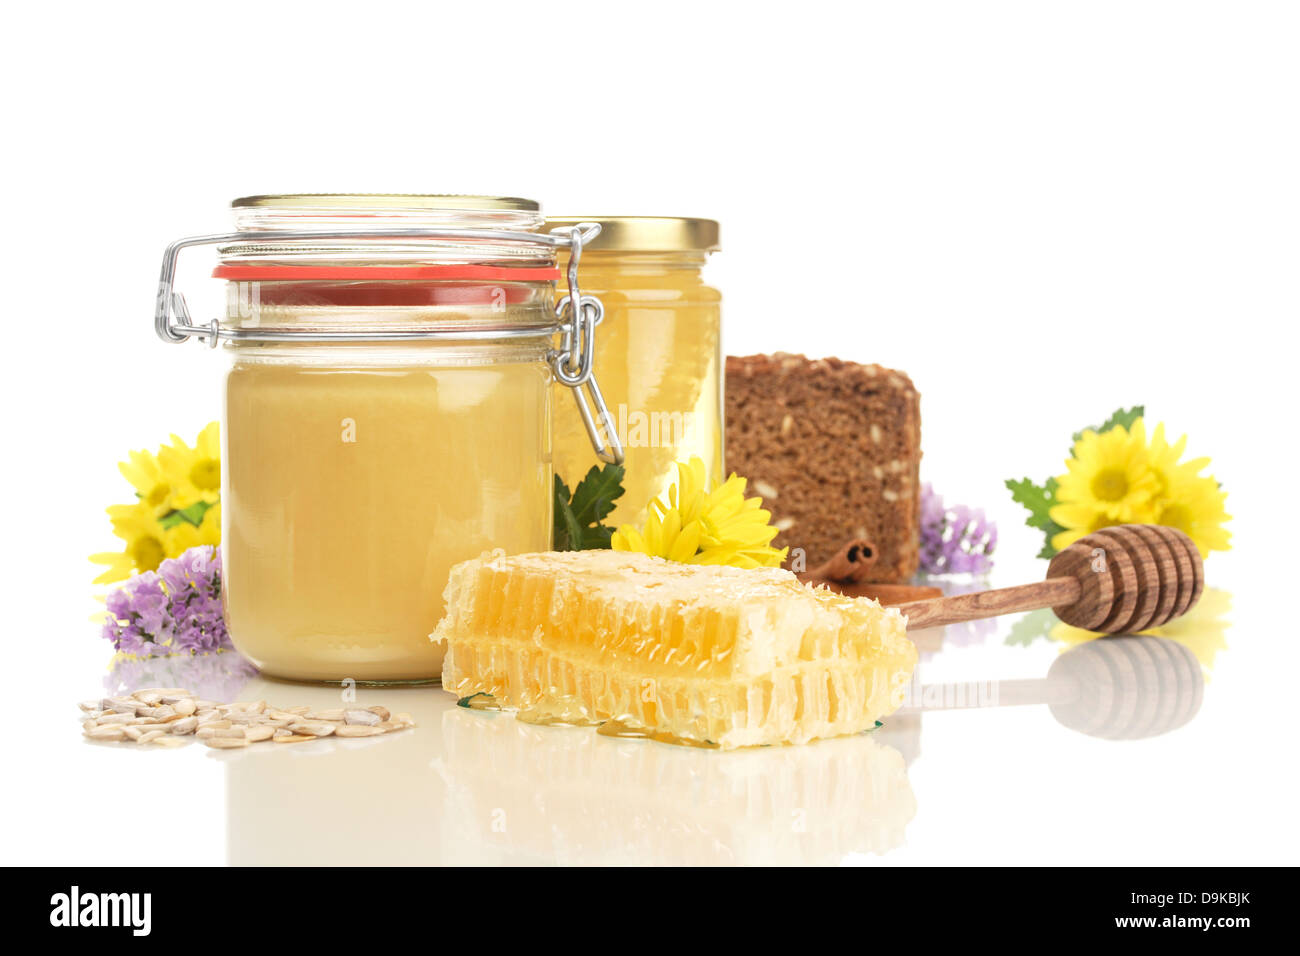 Lunettes avec miel miel, pain complet, miel cuillère, carottes et fleurs de tournesol, des pots de miel avec du miel, de la farine complète br Banque D'Images